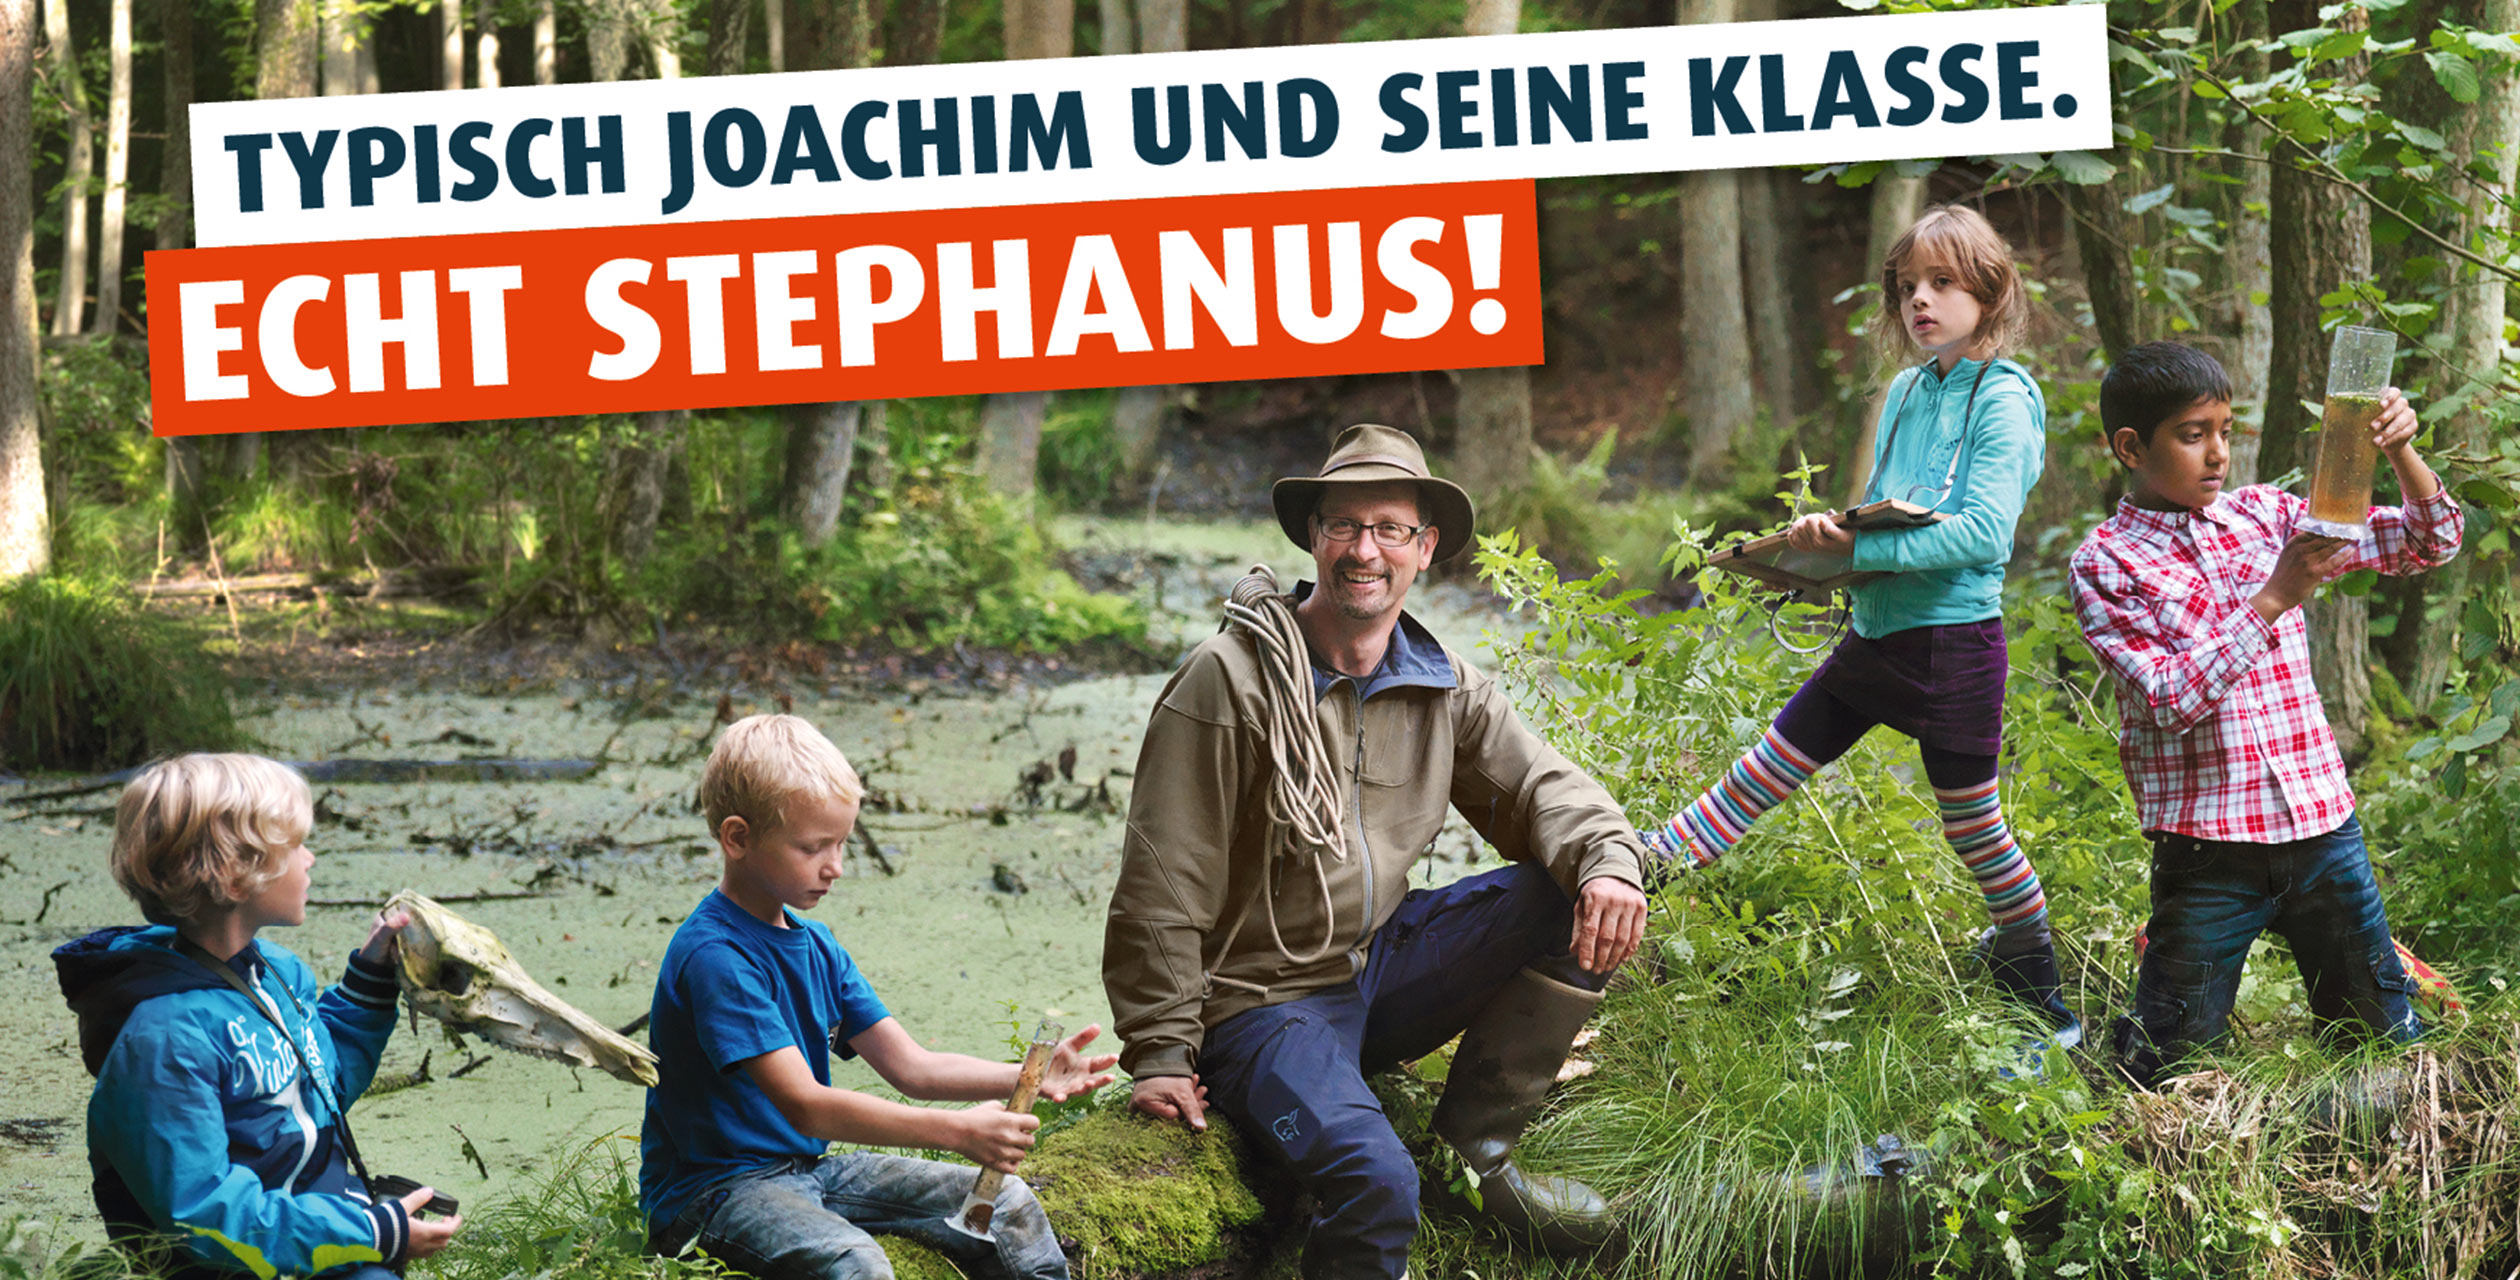 Naturtalente im Wald in der Templiner Waldhofschule - Eine Kampagne der Stephanus-Stiftung